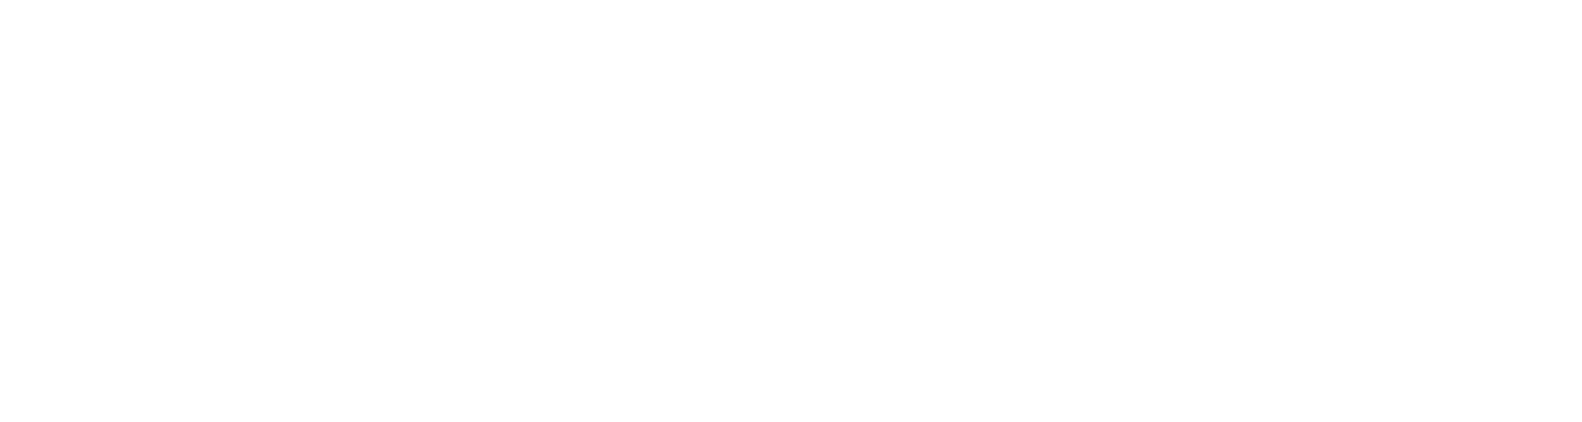 Brinker International
 logo large for dark backgrounds (transparent PNG)